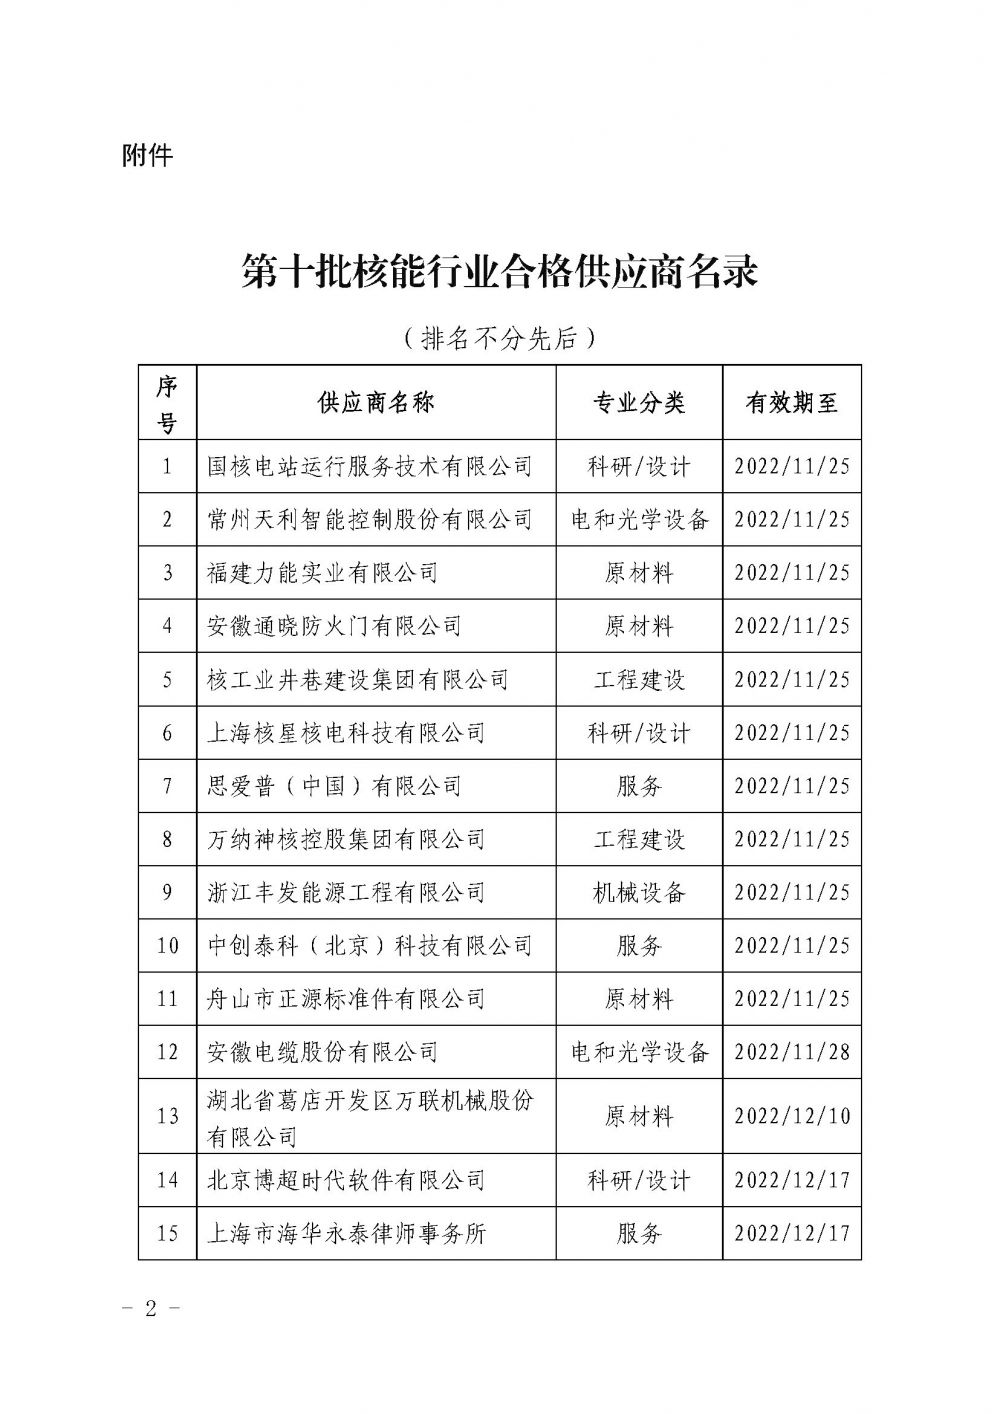 关于发布中国核能行业协会核能行业第十批合格供应商名录的公告_页面_2.jpg